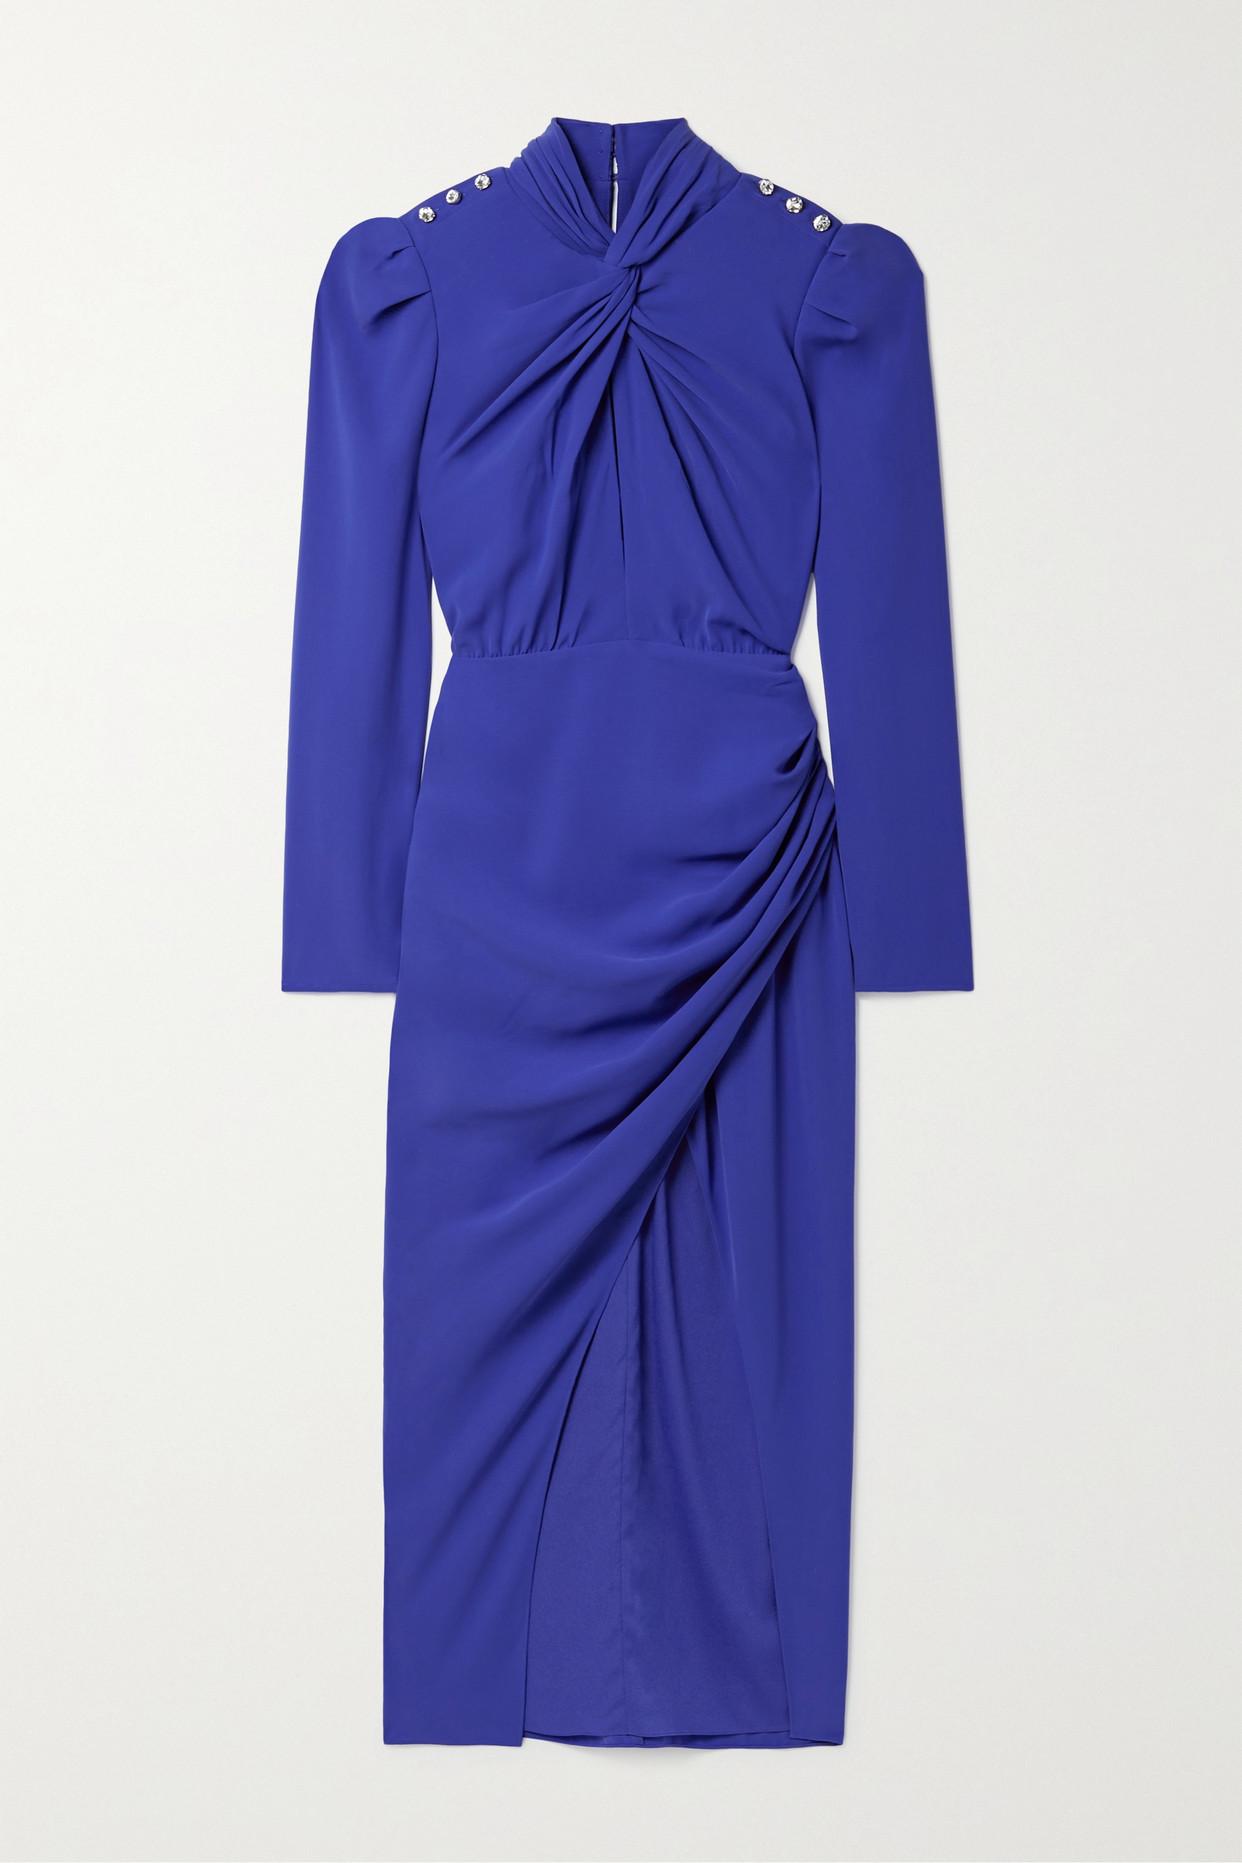 SALE／56%OFF】【SALE／56%OFF】XSCAPE Women's Crepe Ruffle Back Short Sleeve Gown  Purple Size 14 レディース ドレス